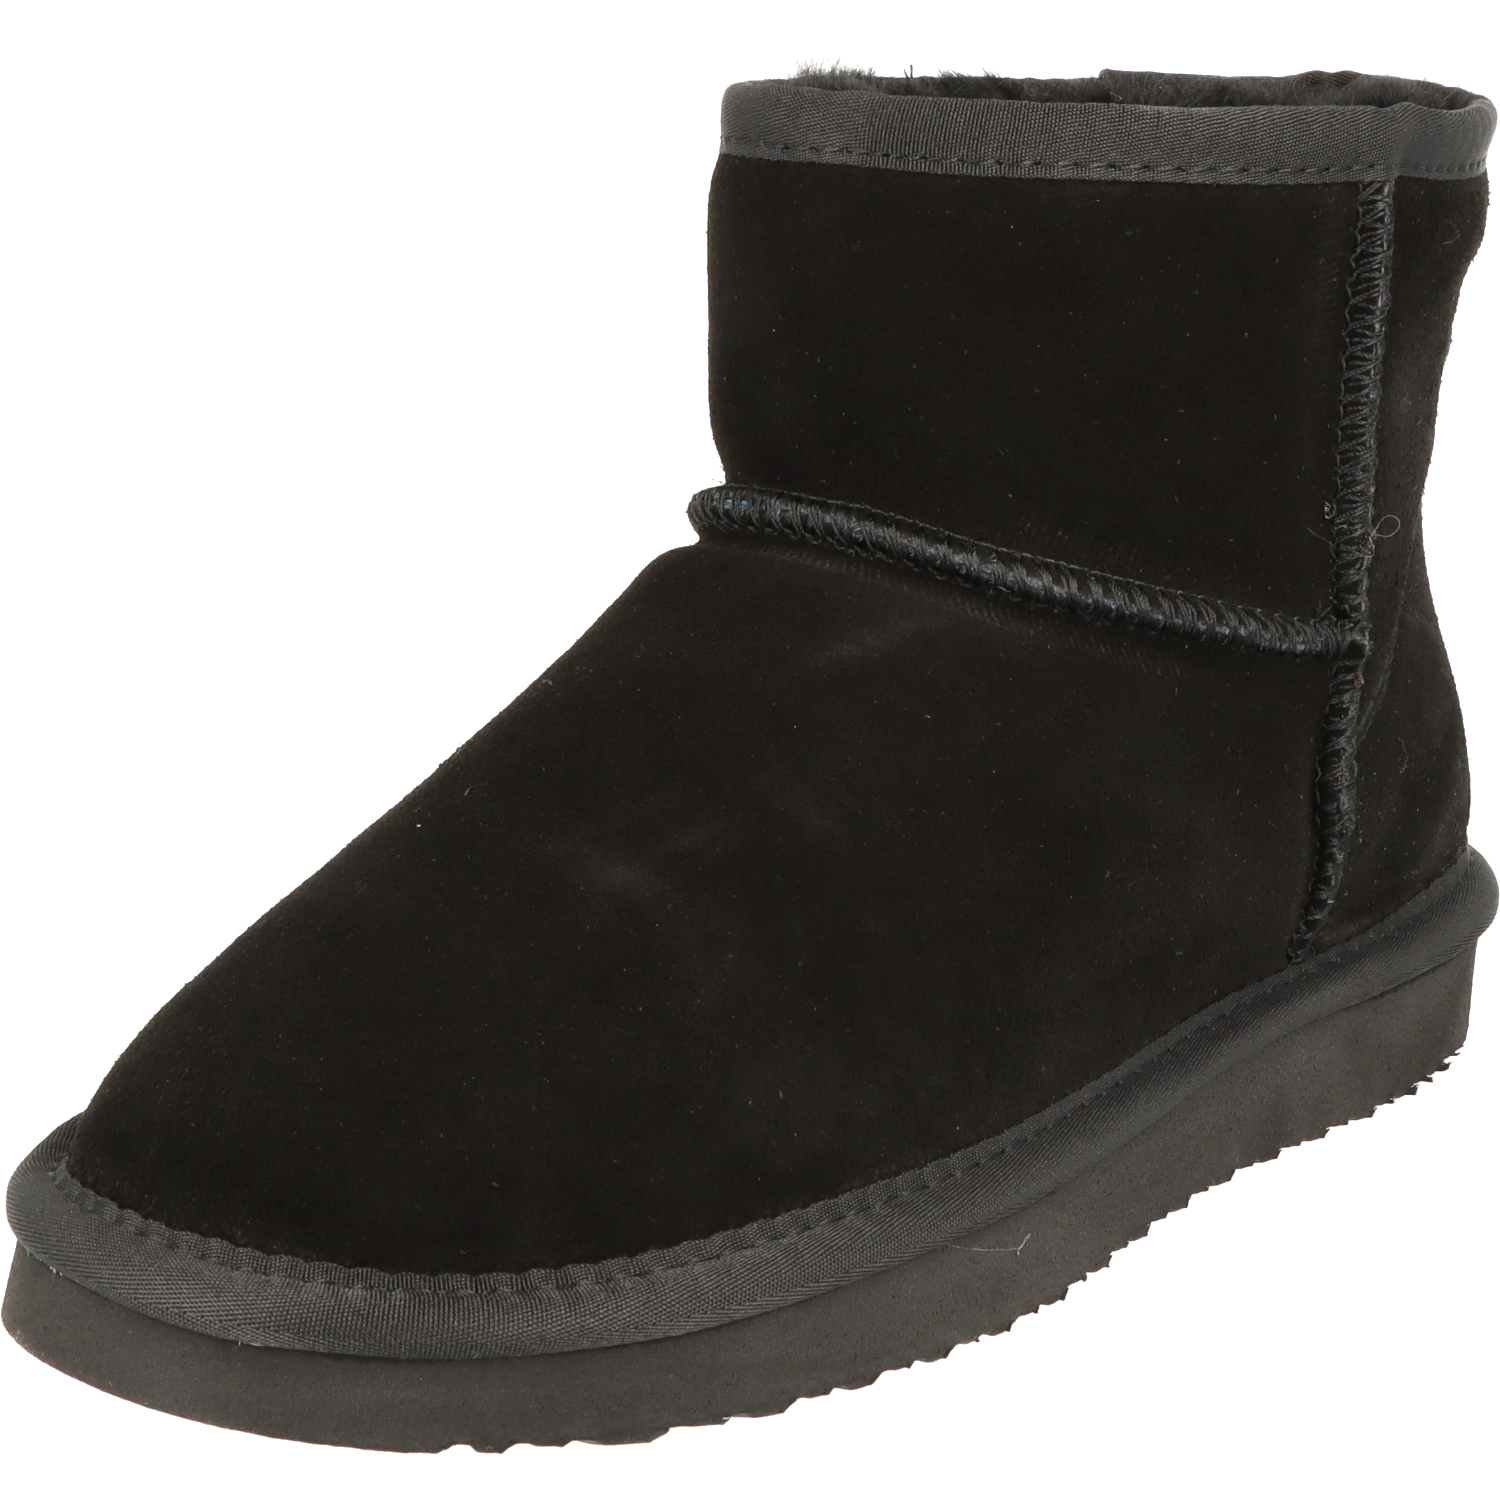 BLK1978 Damen Schuhe Winter Low-Cut Boots 264-532 Lammfell gefüttert Black